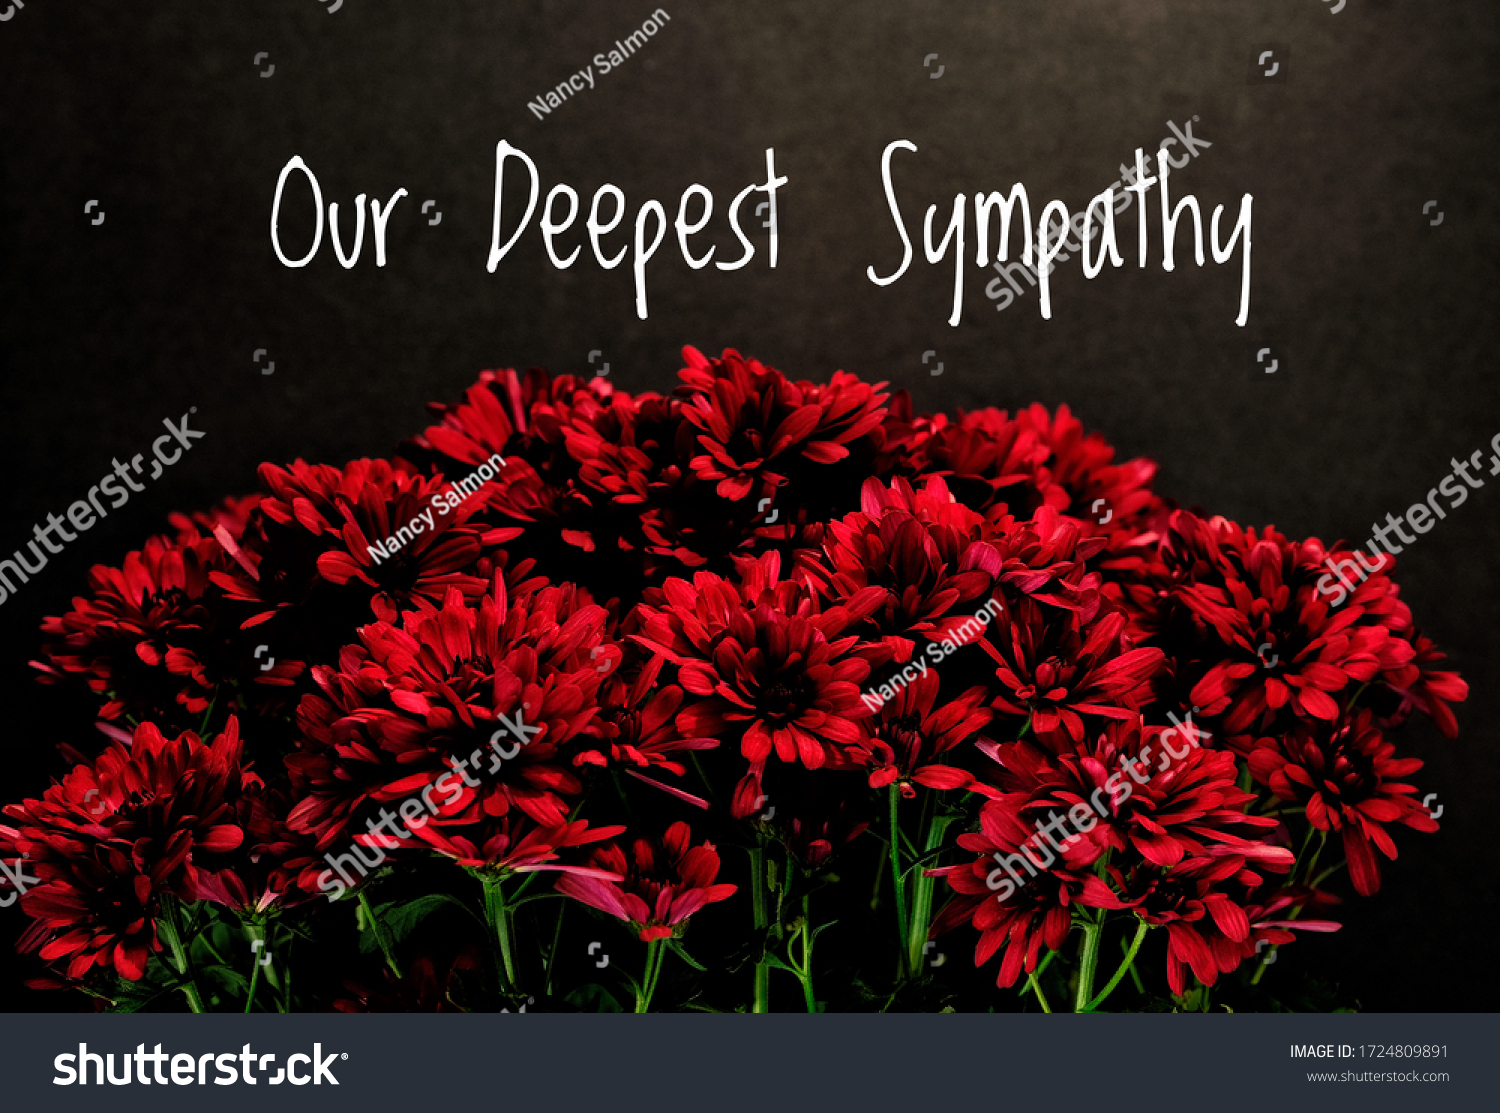 Deep sympathy condolence Images, Stock Photos & Vectors 